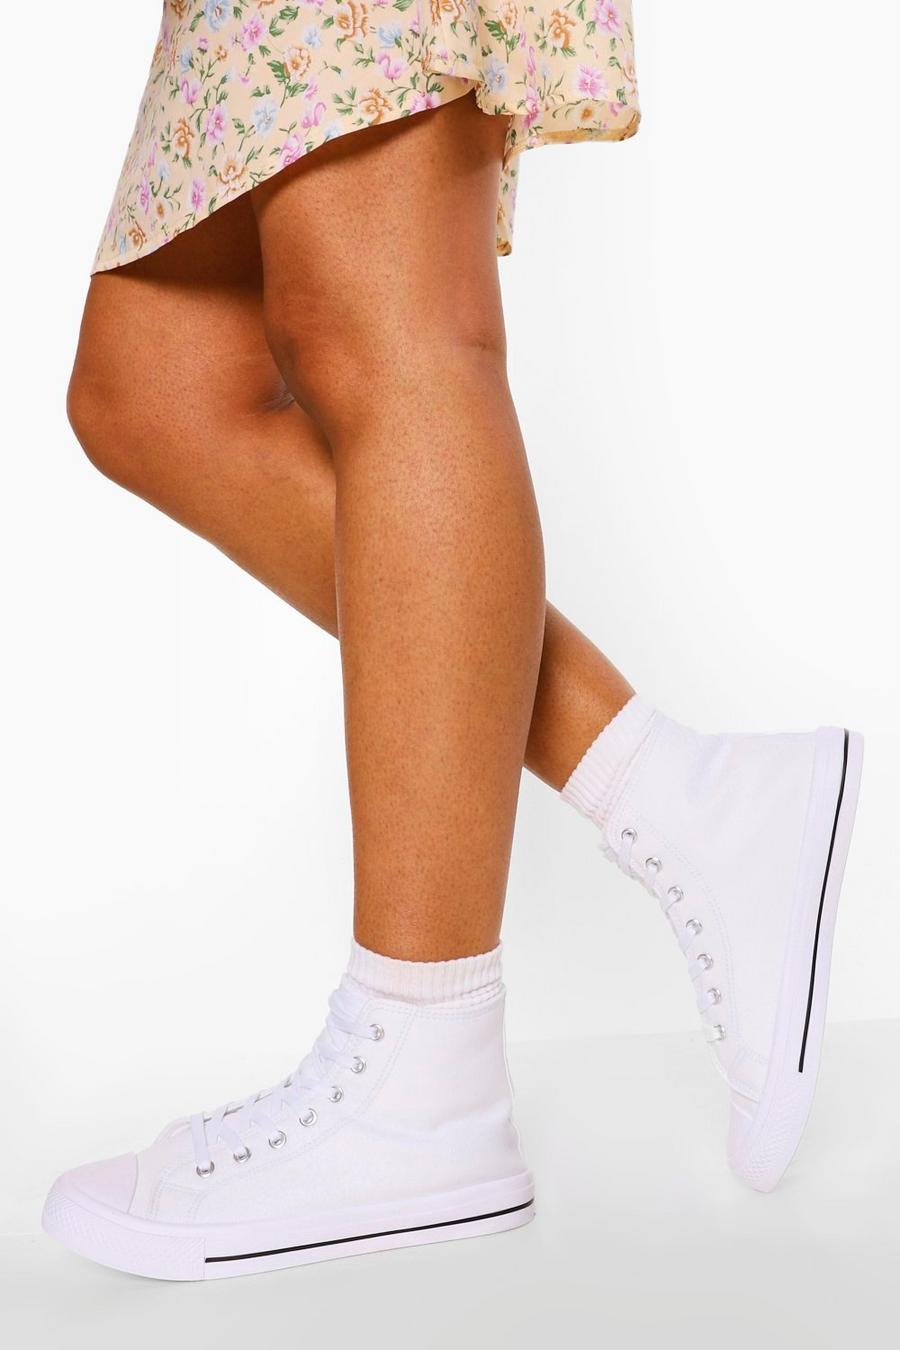 Scarpe da ginnastica alte in tela, calzata ampia, Bianco